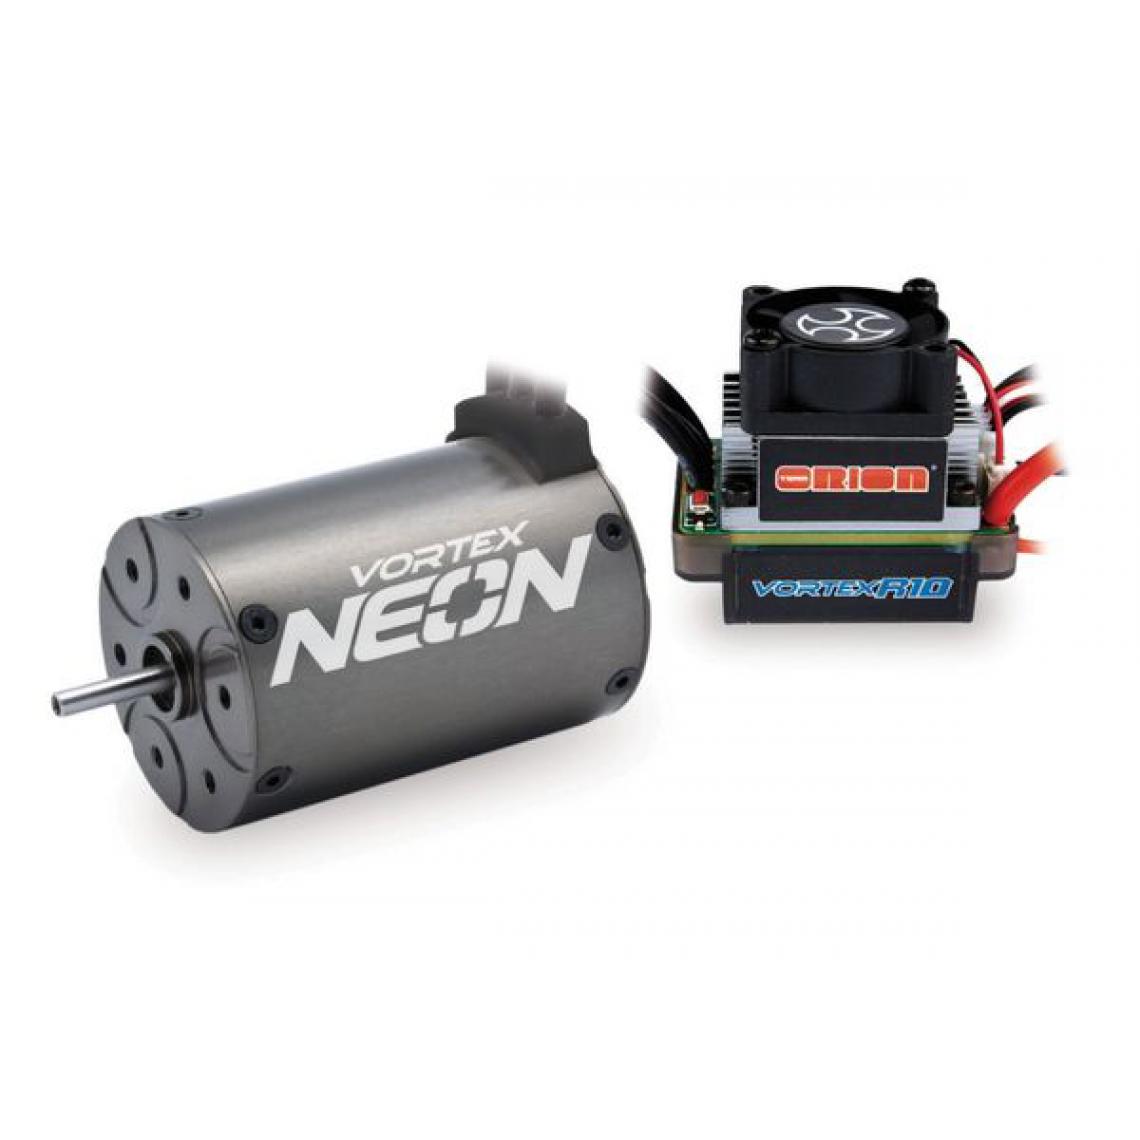 Orion - Combo Neon 14 (motor +R10 Sport controller Deans) - Accessoires et pièces